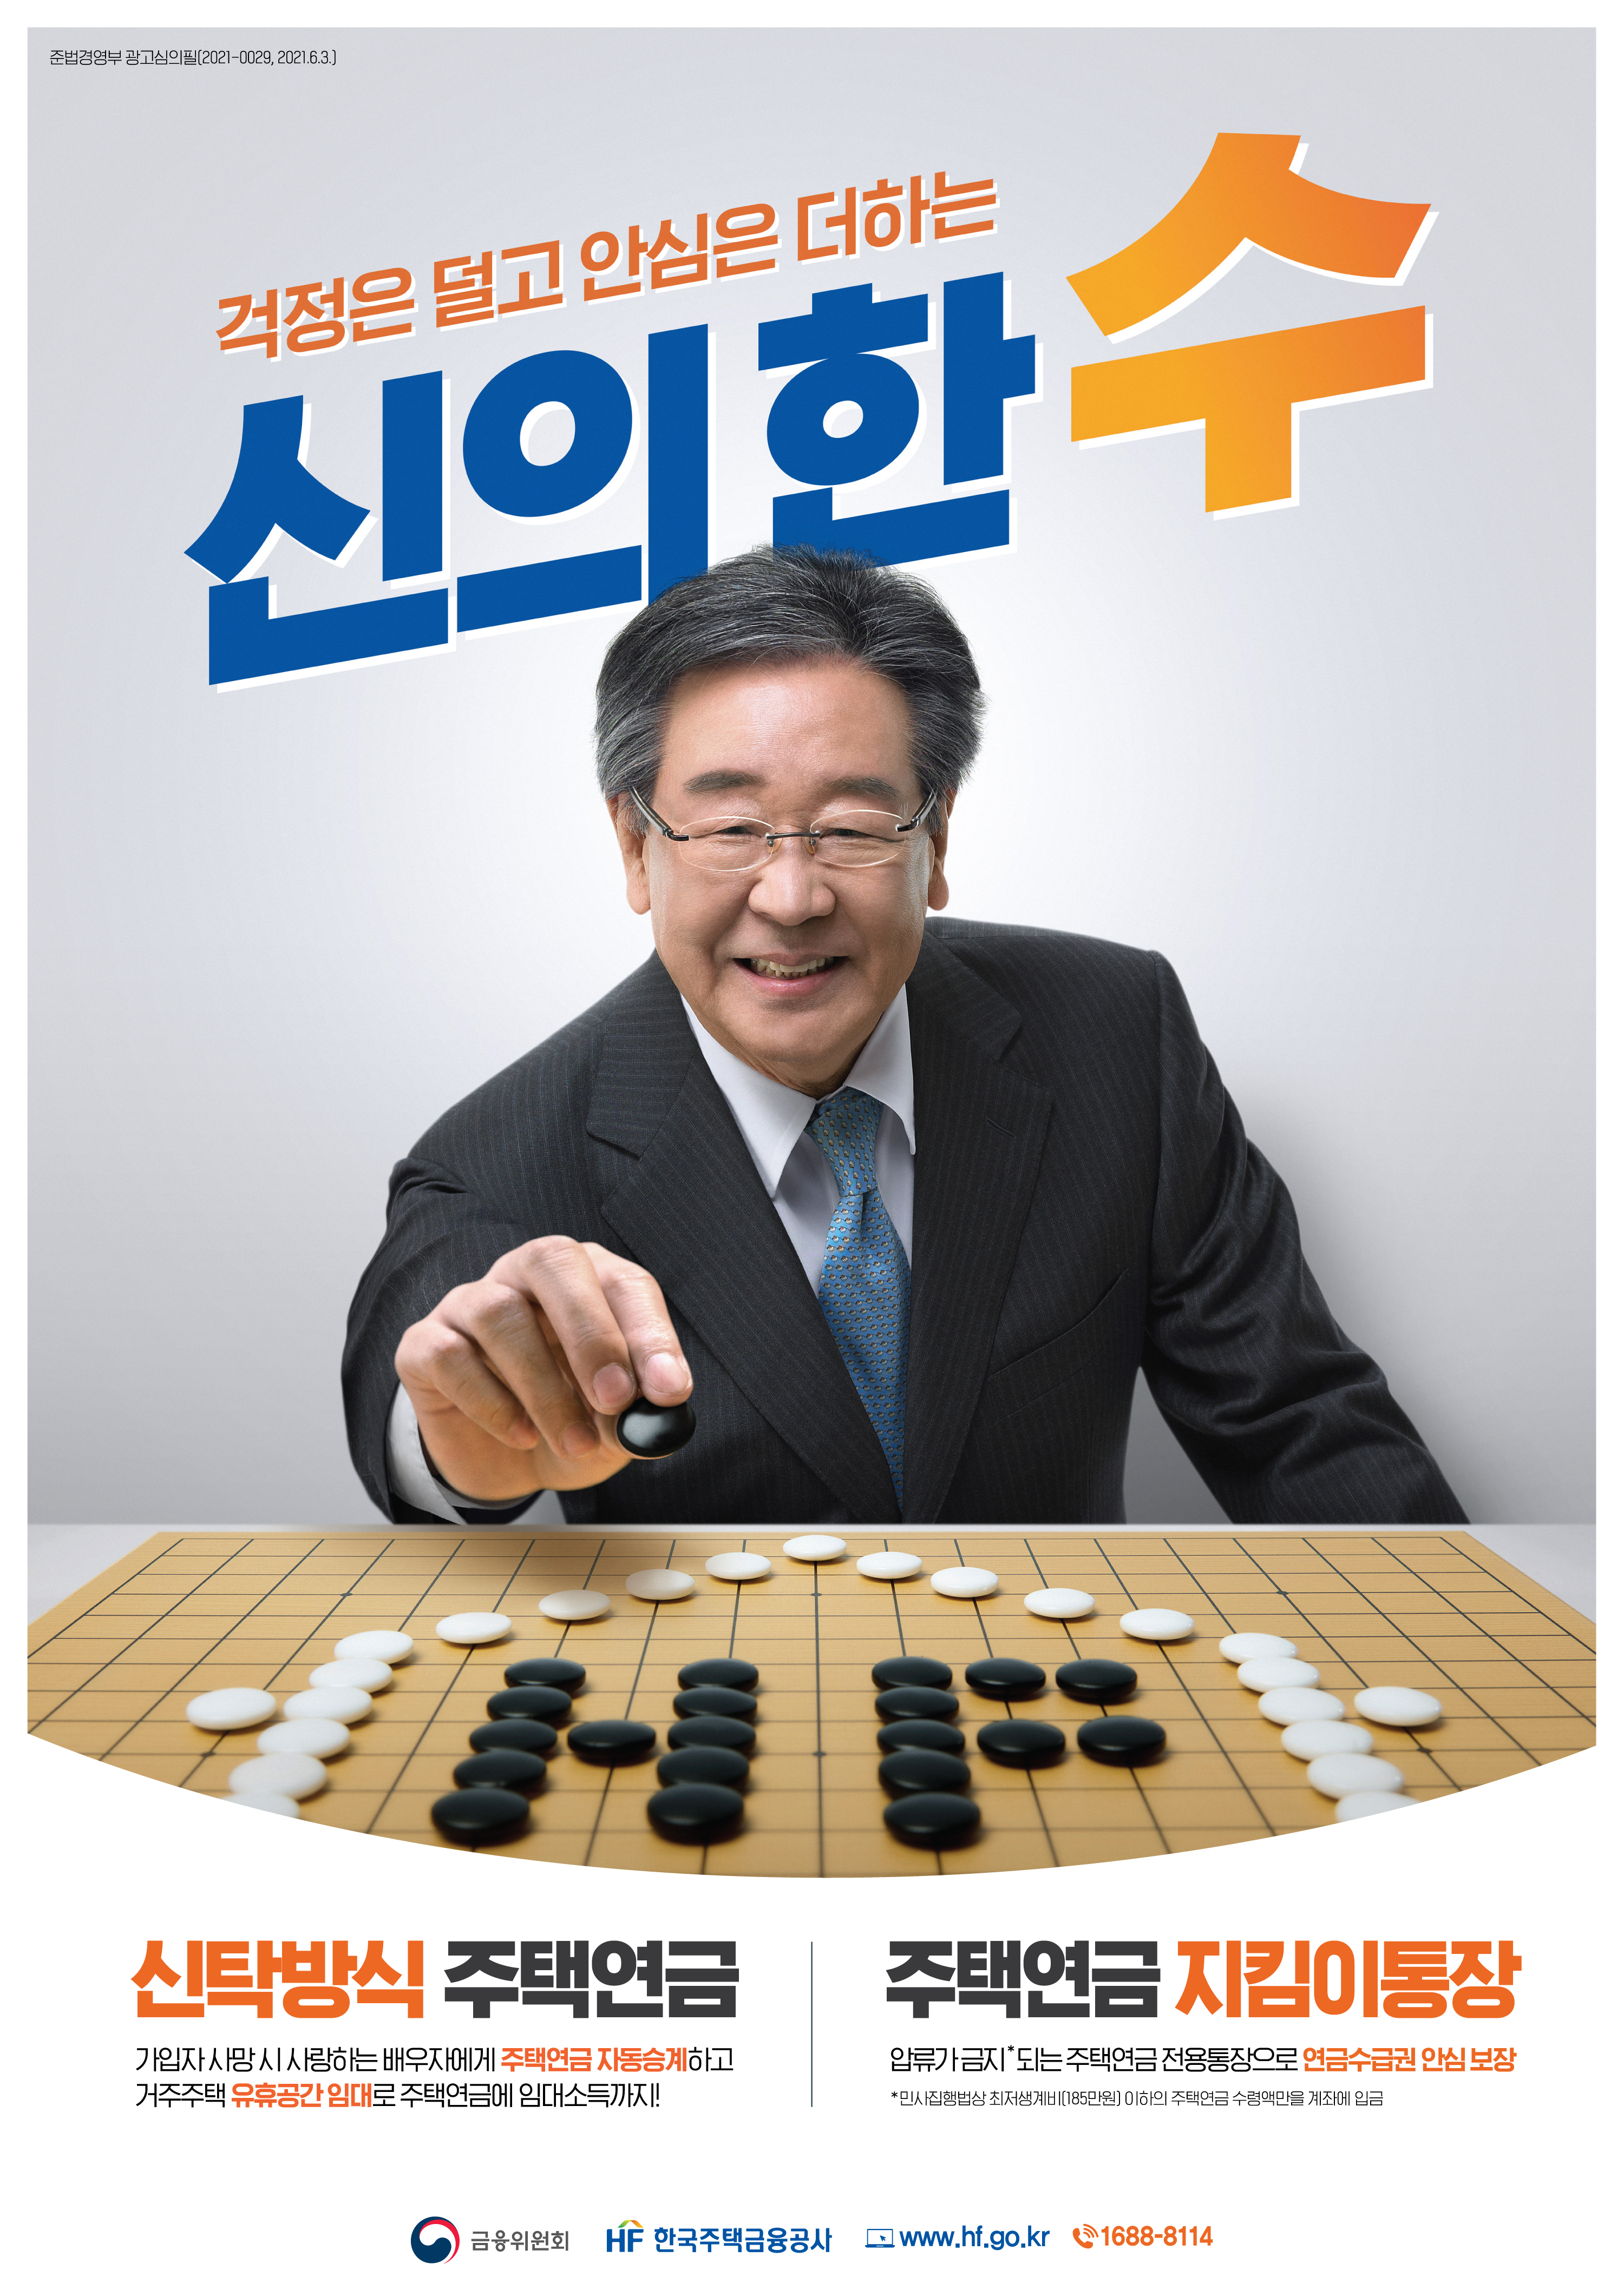 한국주택금융공사 홍보 이미지 3